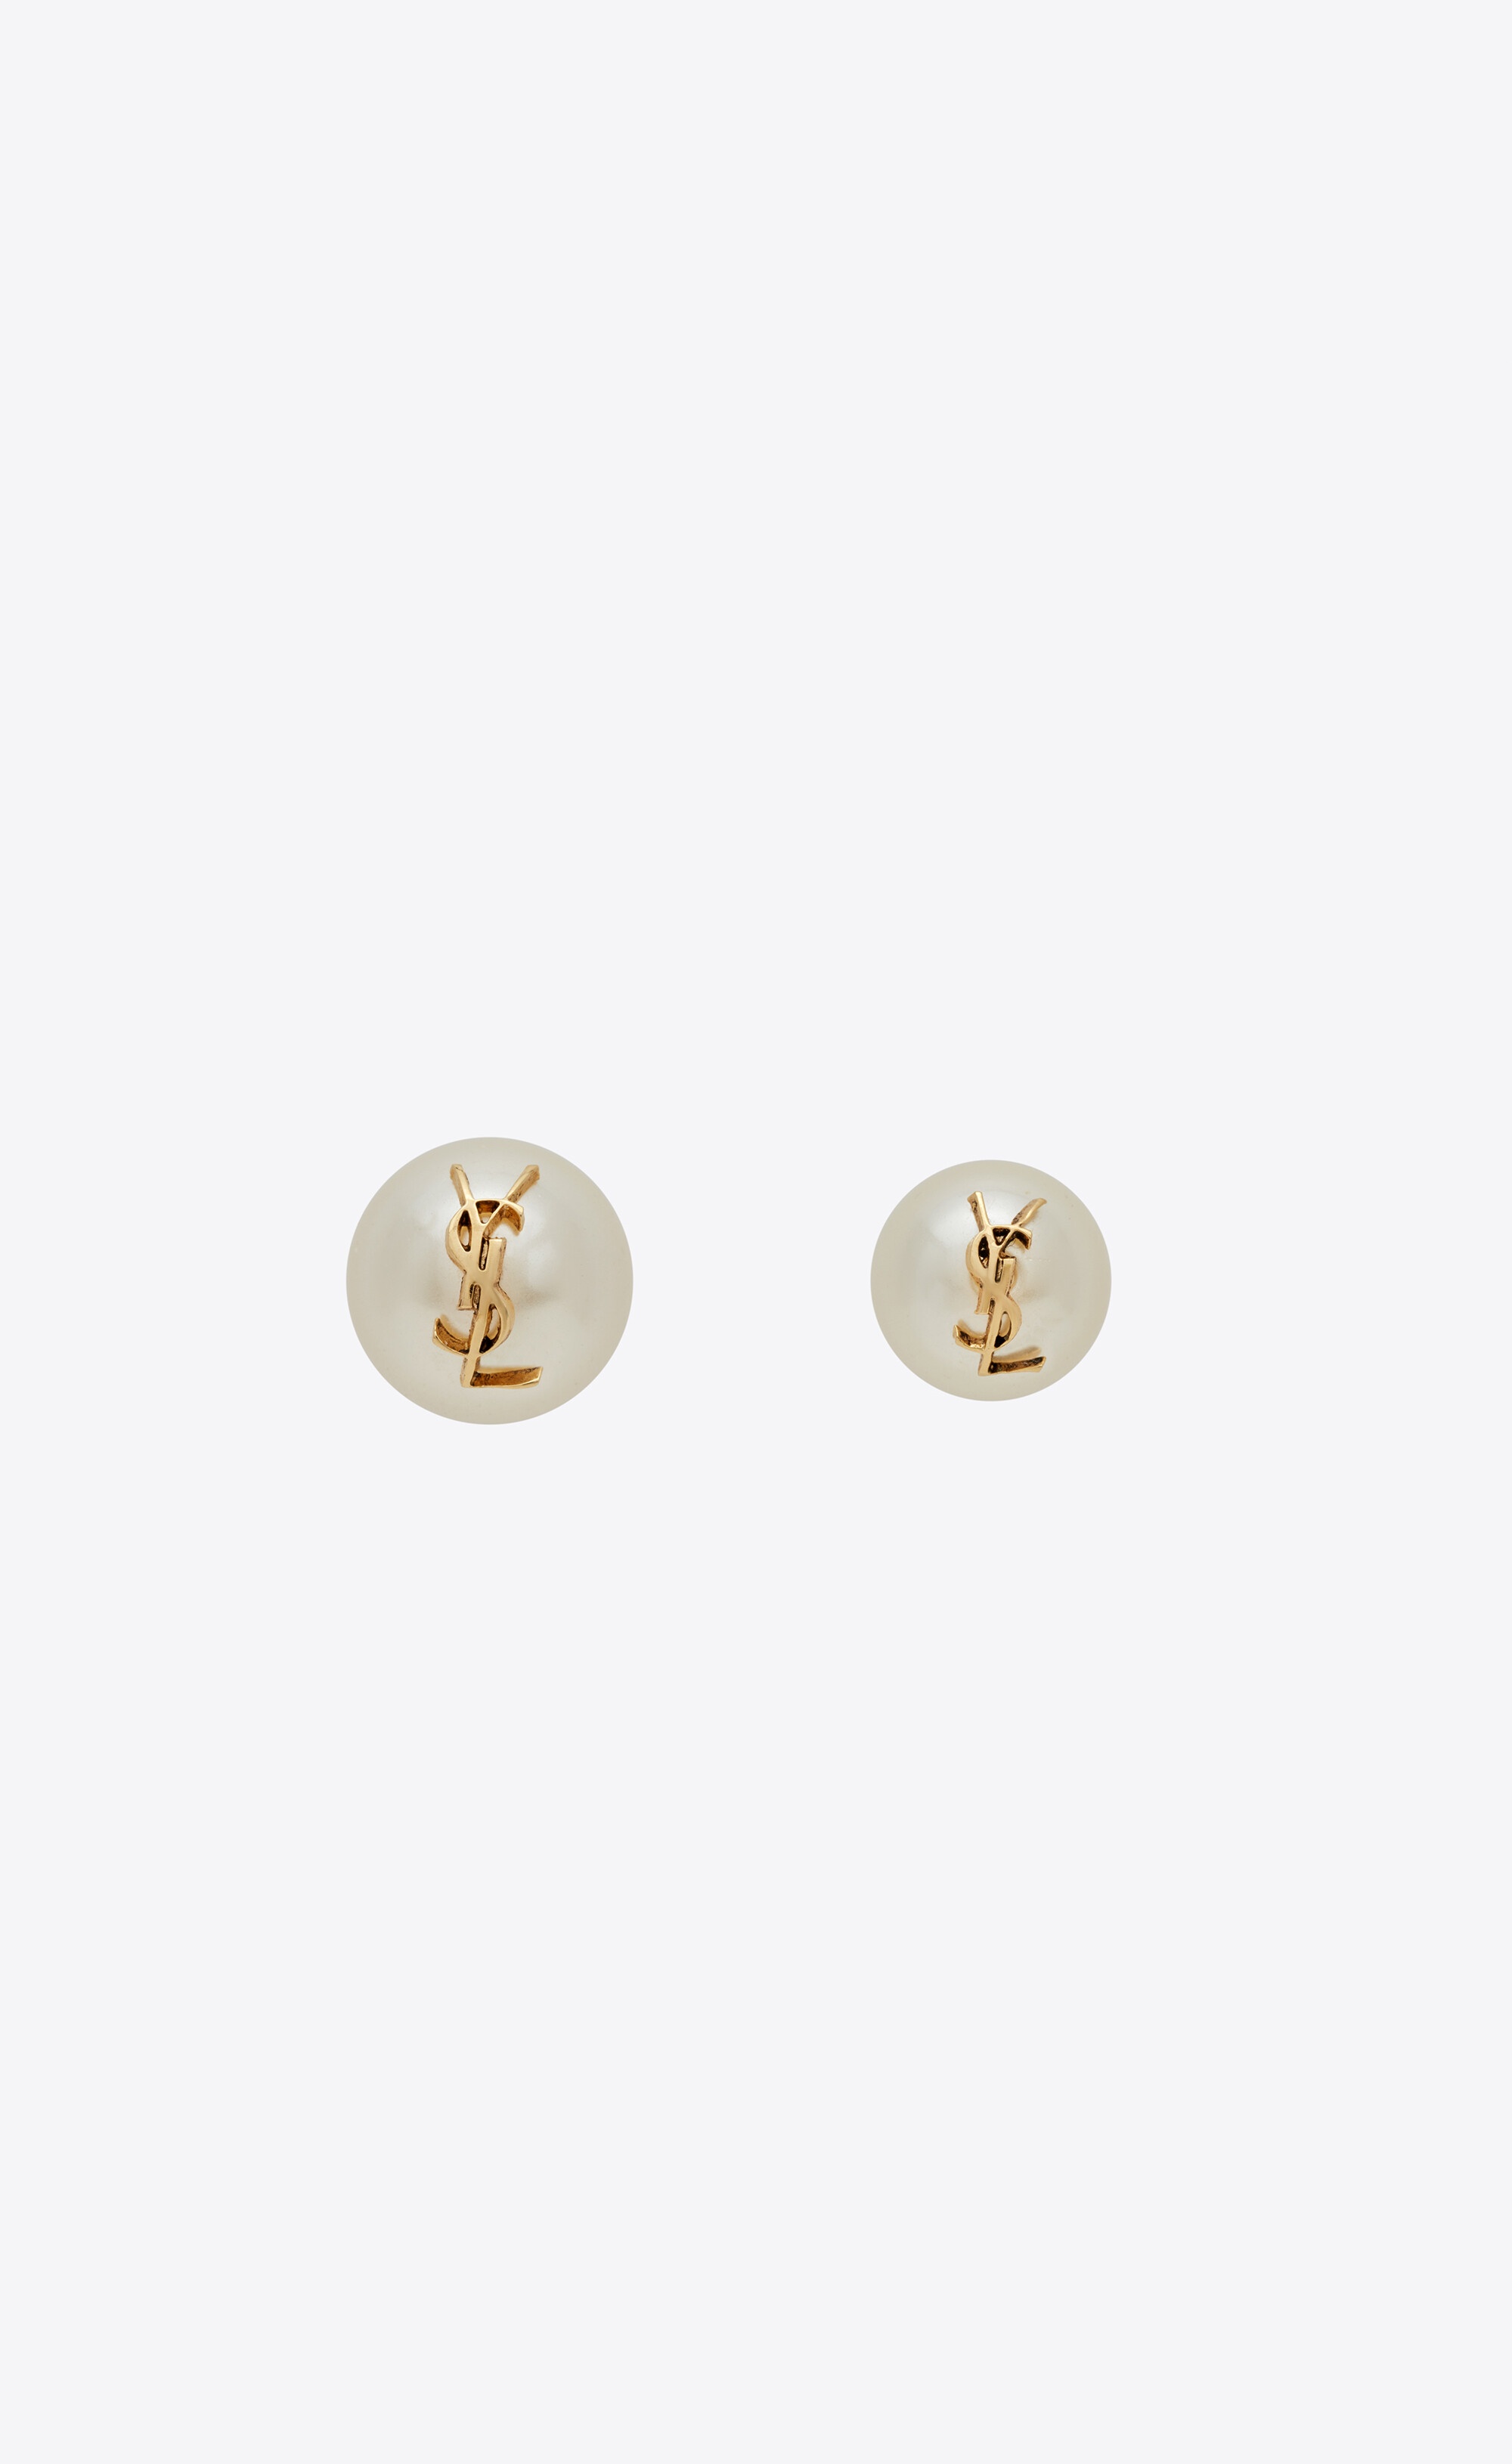 ysl pearl earrings in metal - 1